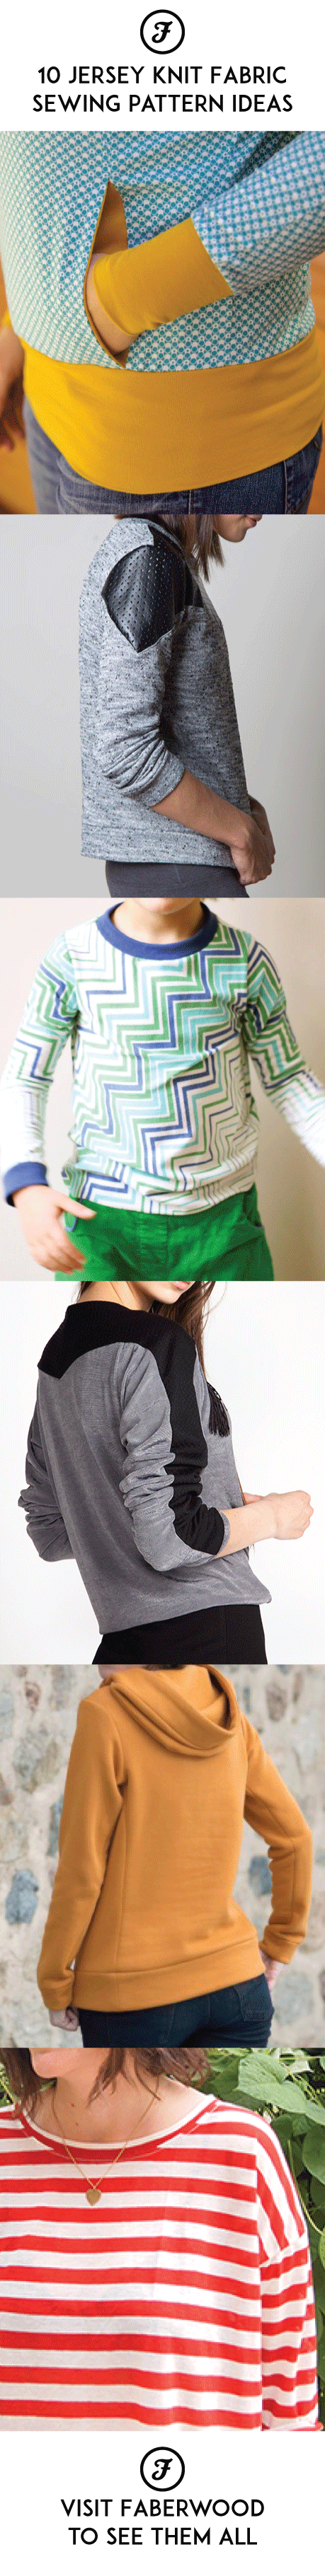 10 Jersey Knit Fabric Sewing Pattern ideas